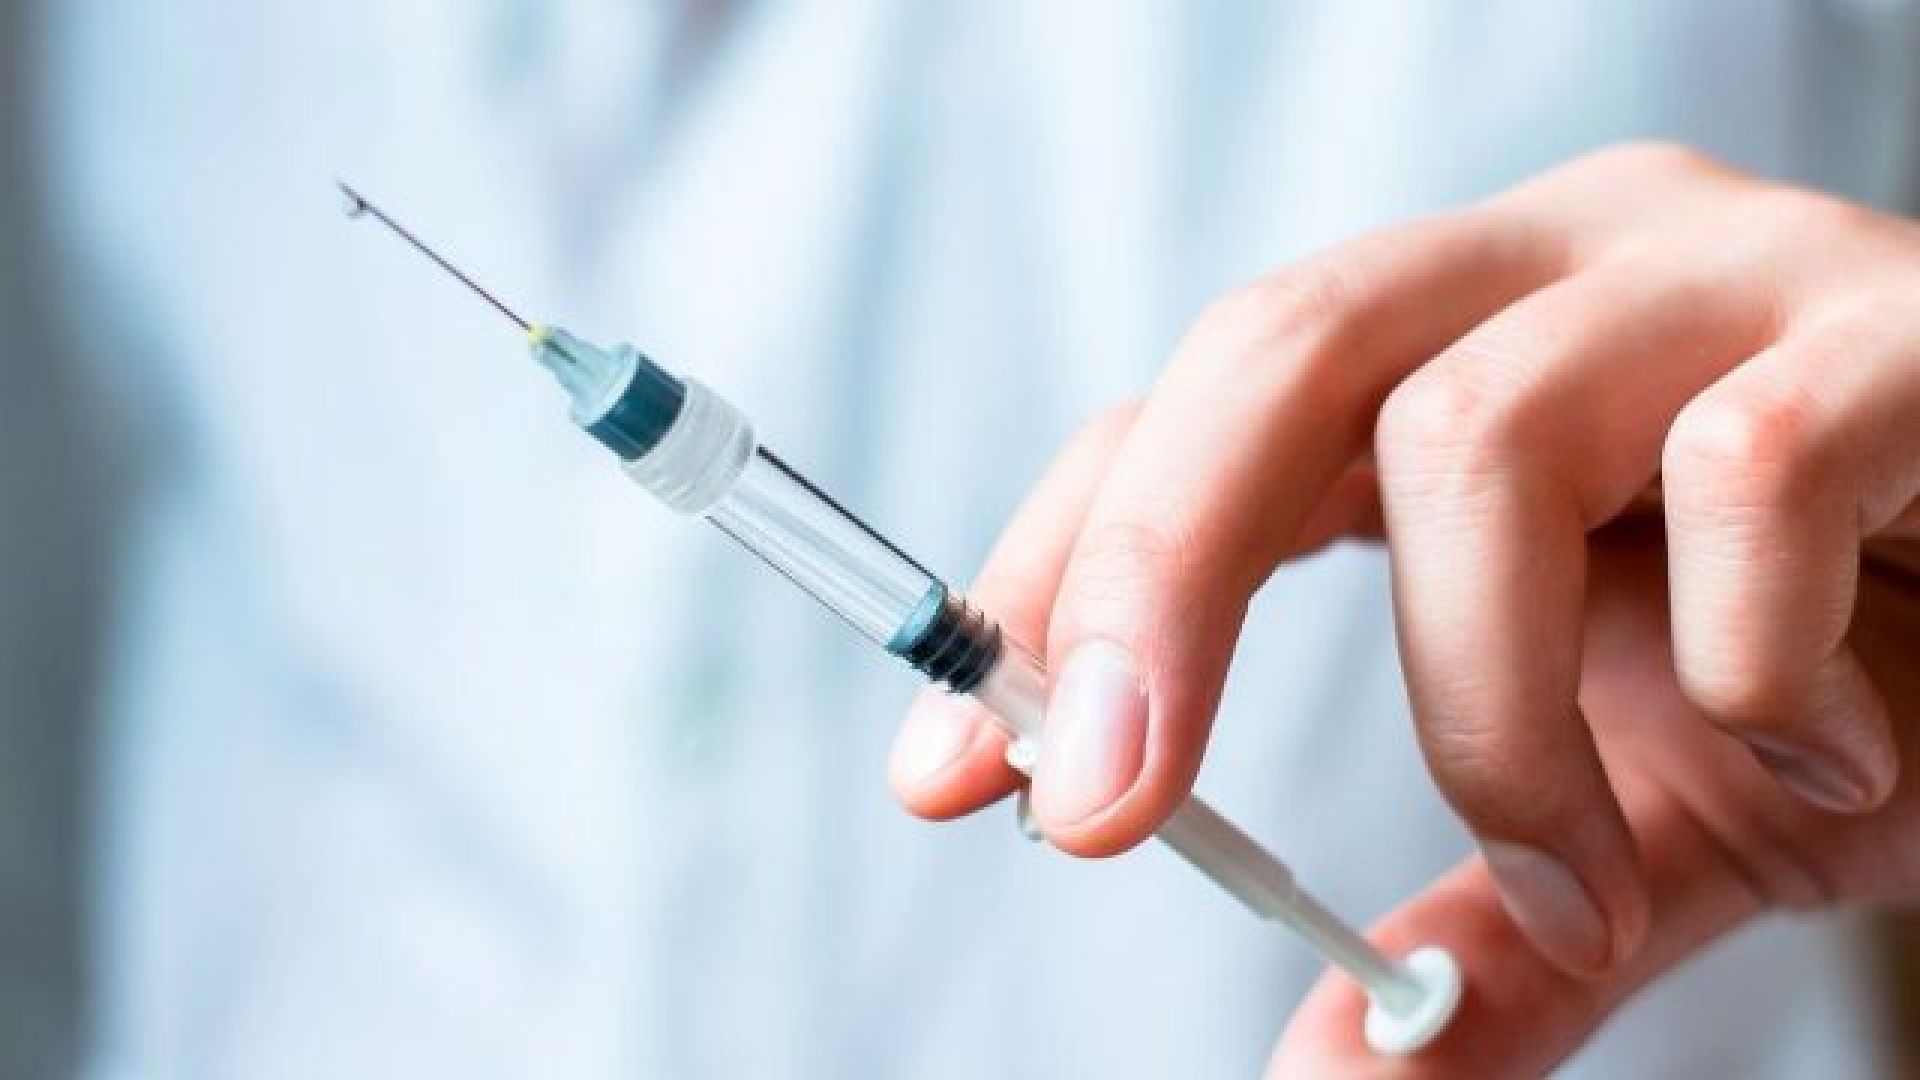 Ήρθε στην Ελλάδα το νέο εμβόλιο για την πρόληψη της μηνιγγίτιδας από την οροομάδα Β